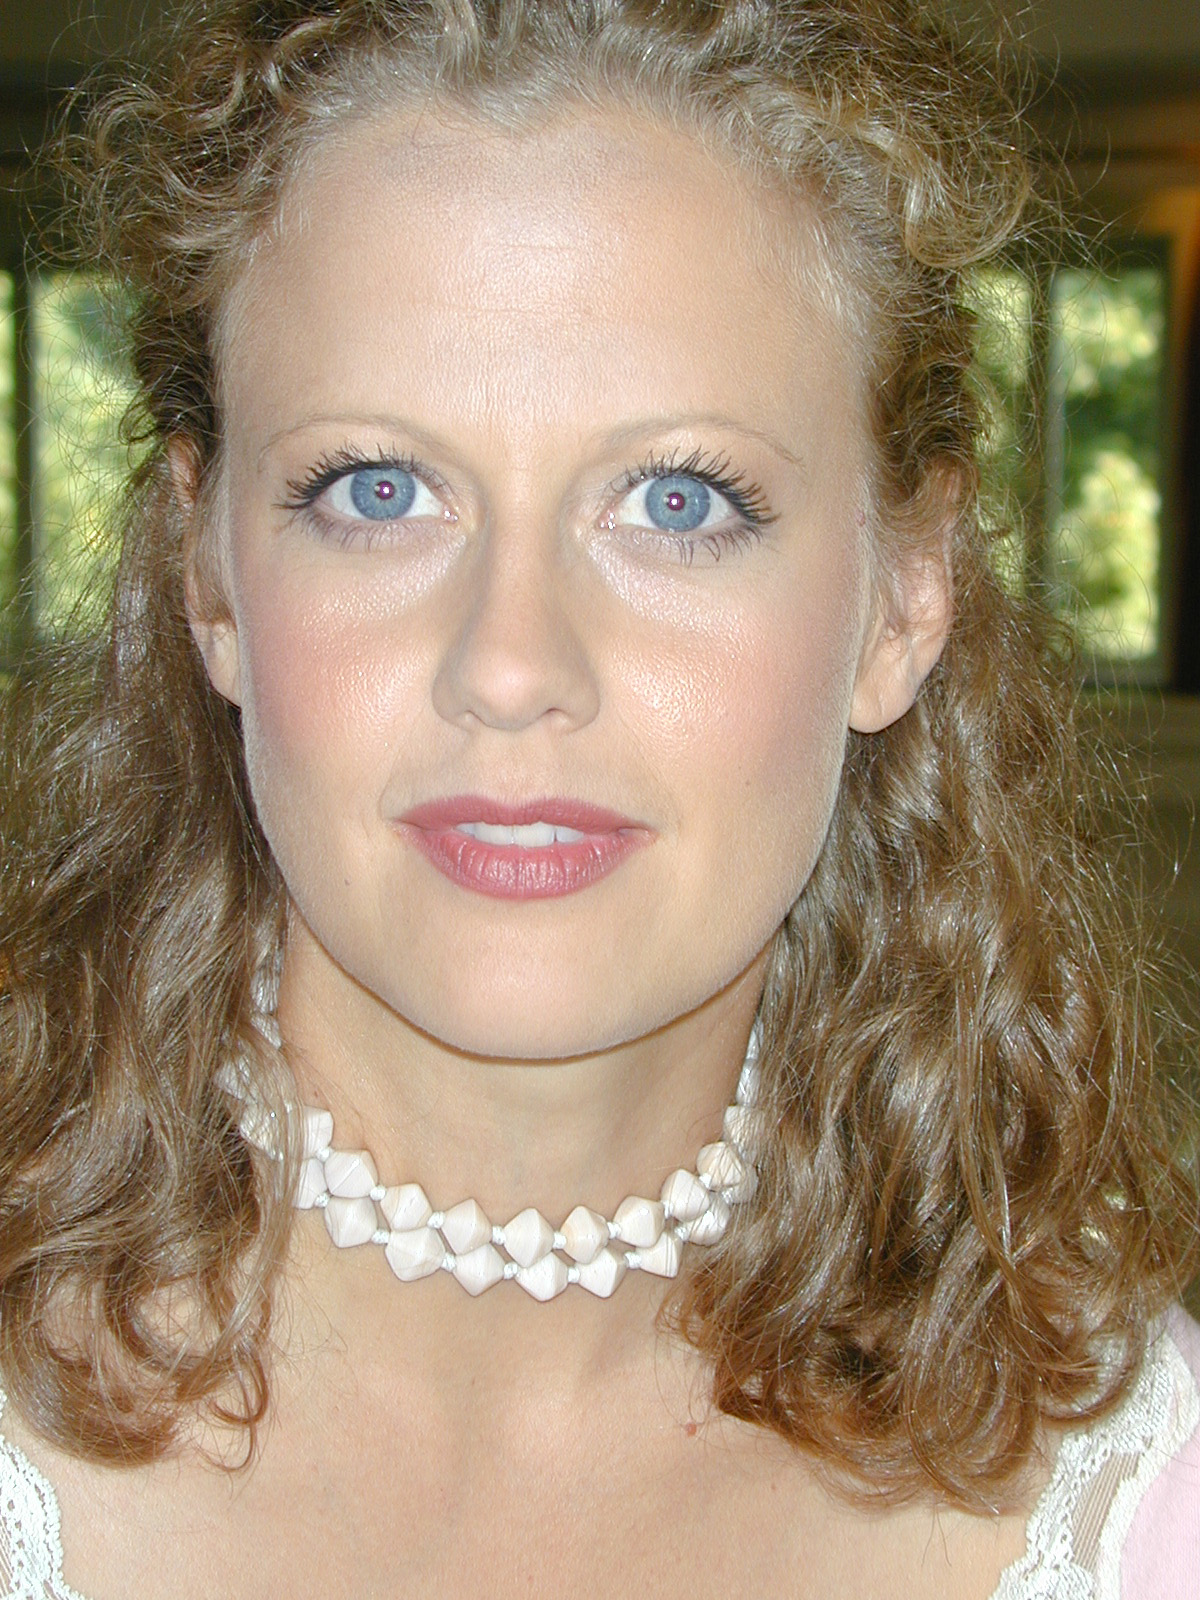 Barbara Schöneberger